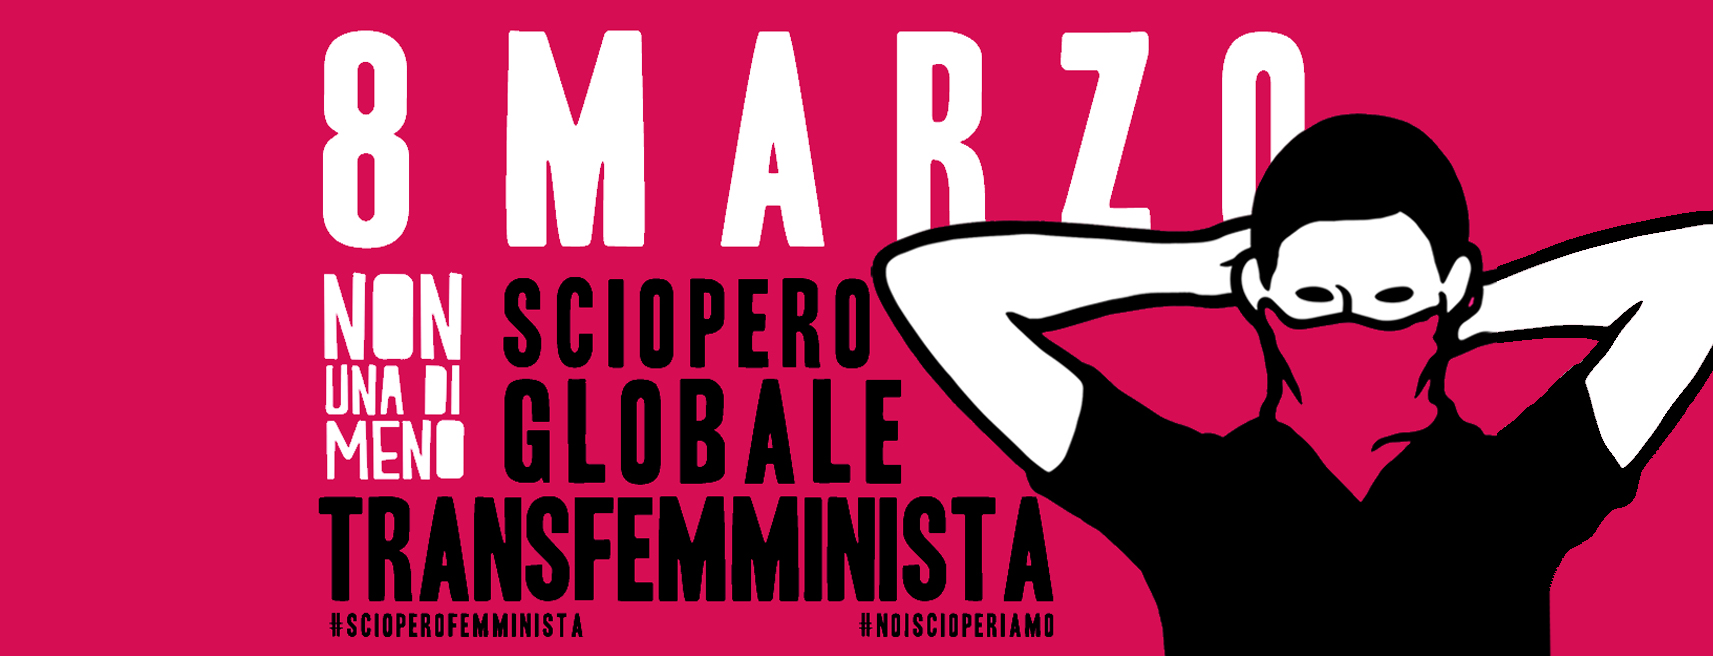 sciopero femminista nonunadimeno servizio civile internazionale